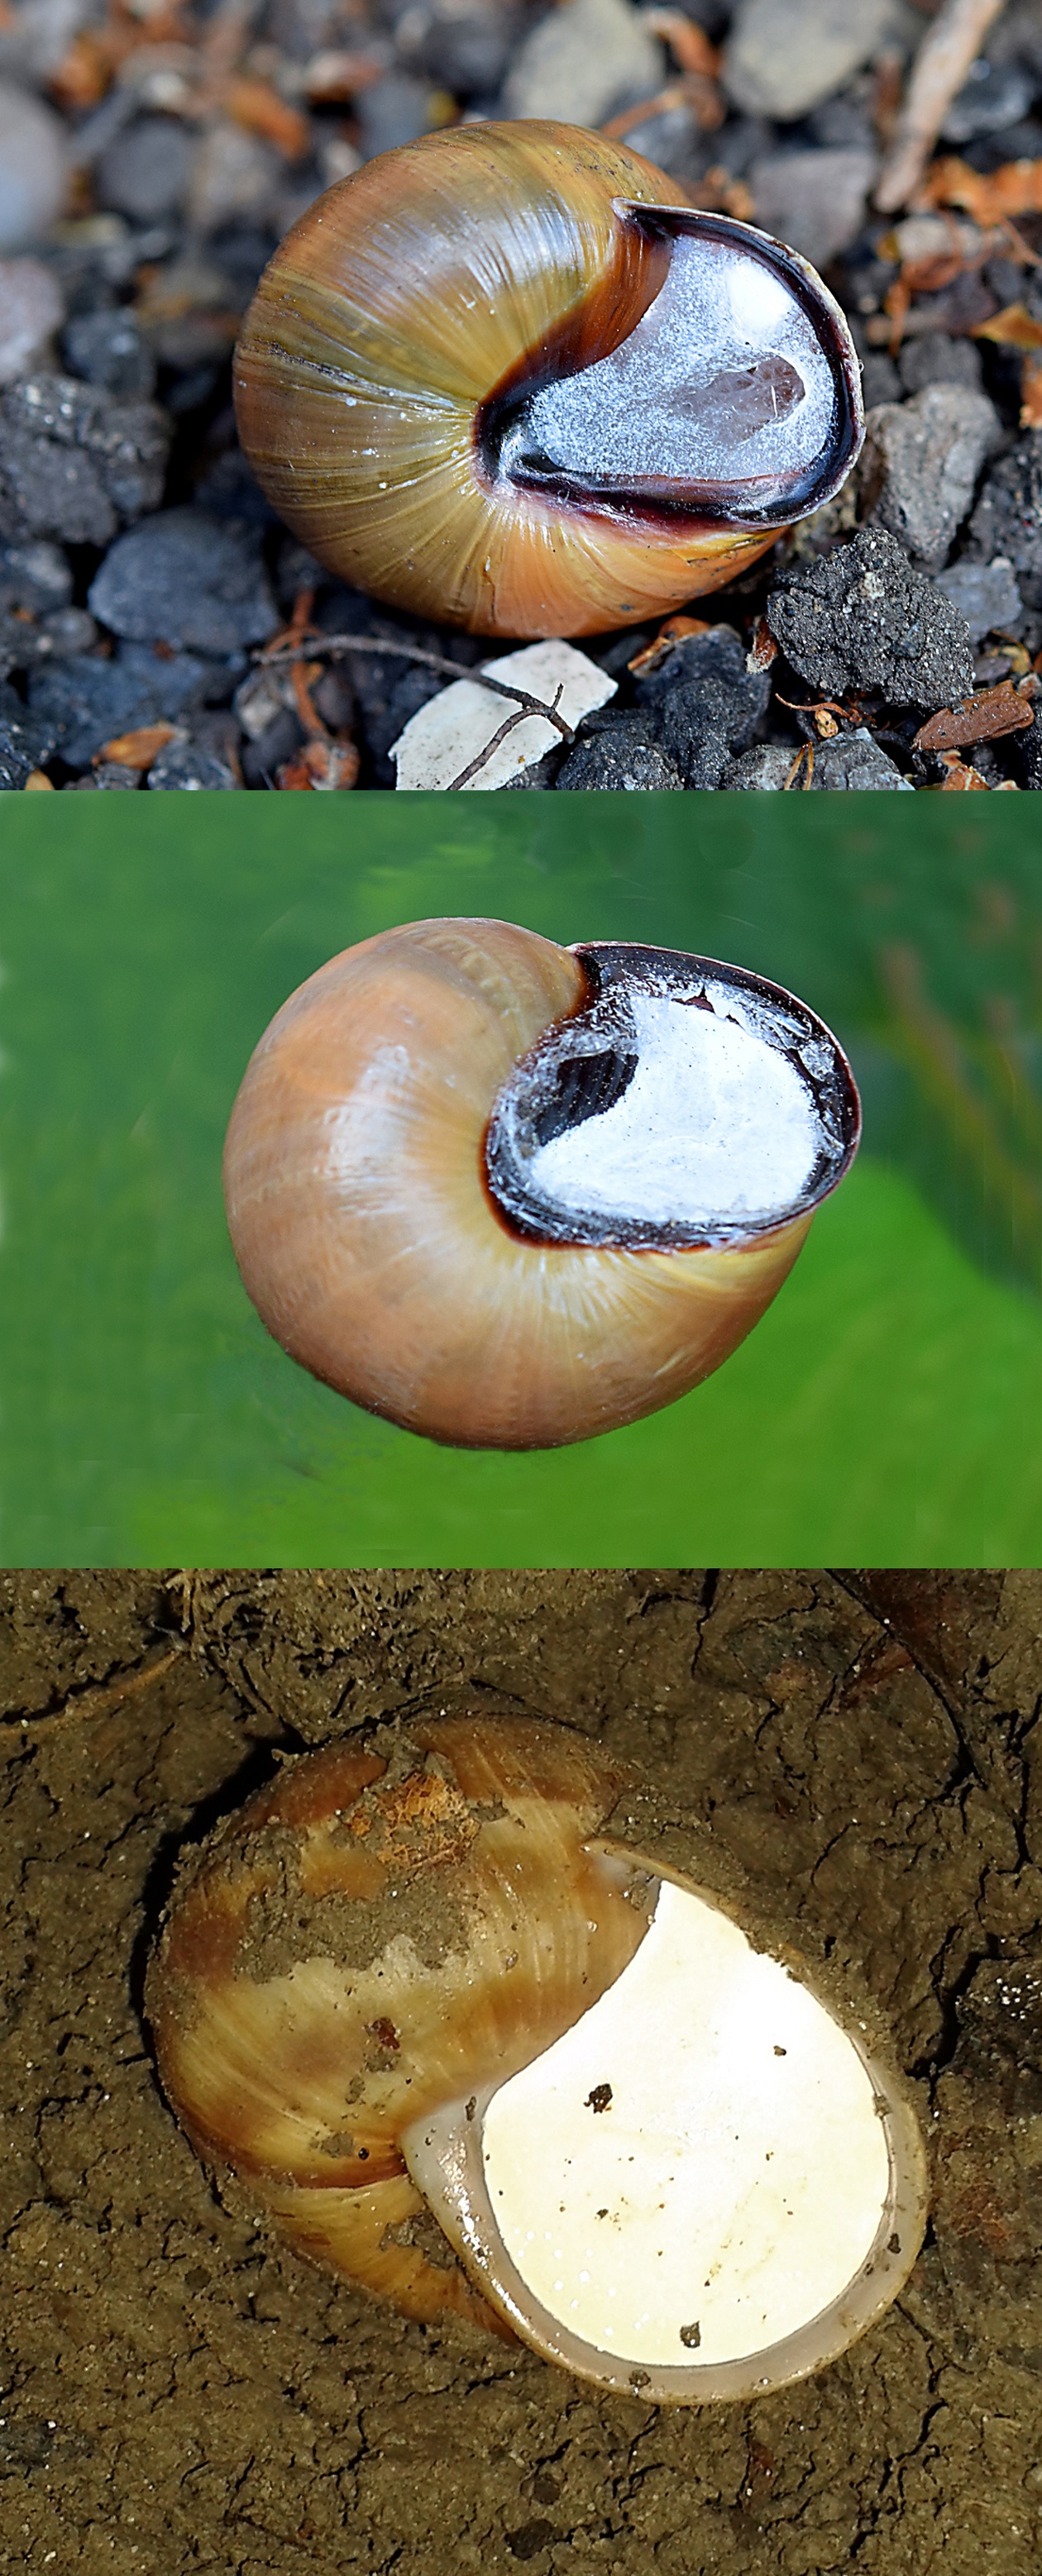 Where do garden snails live in winter?